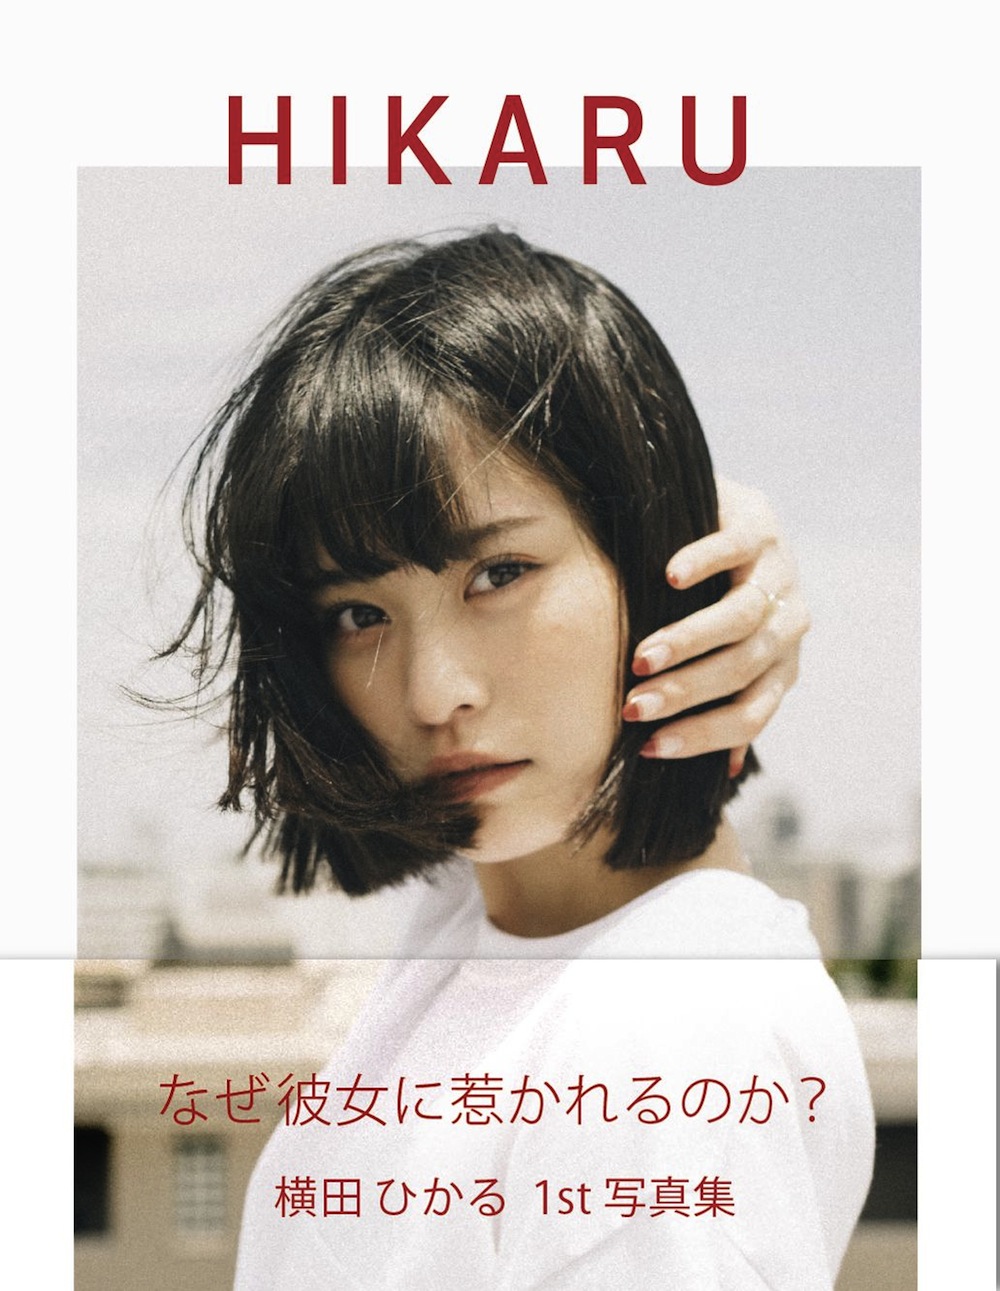 横田ひかる1st 写真集『HIKARU』